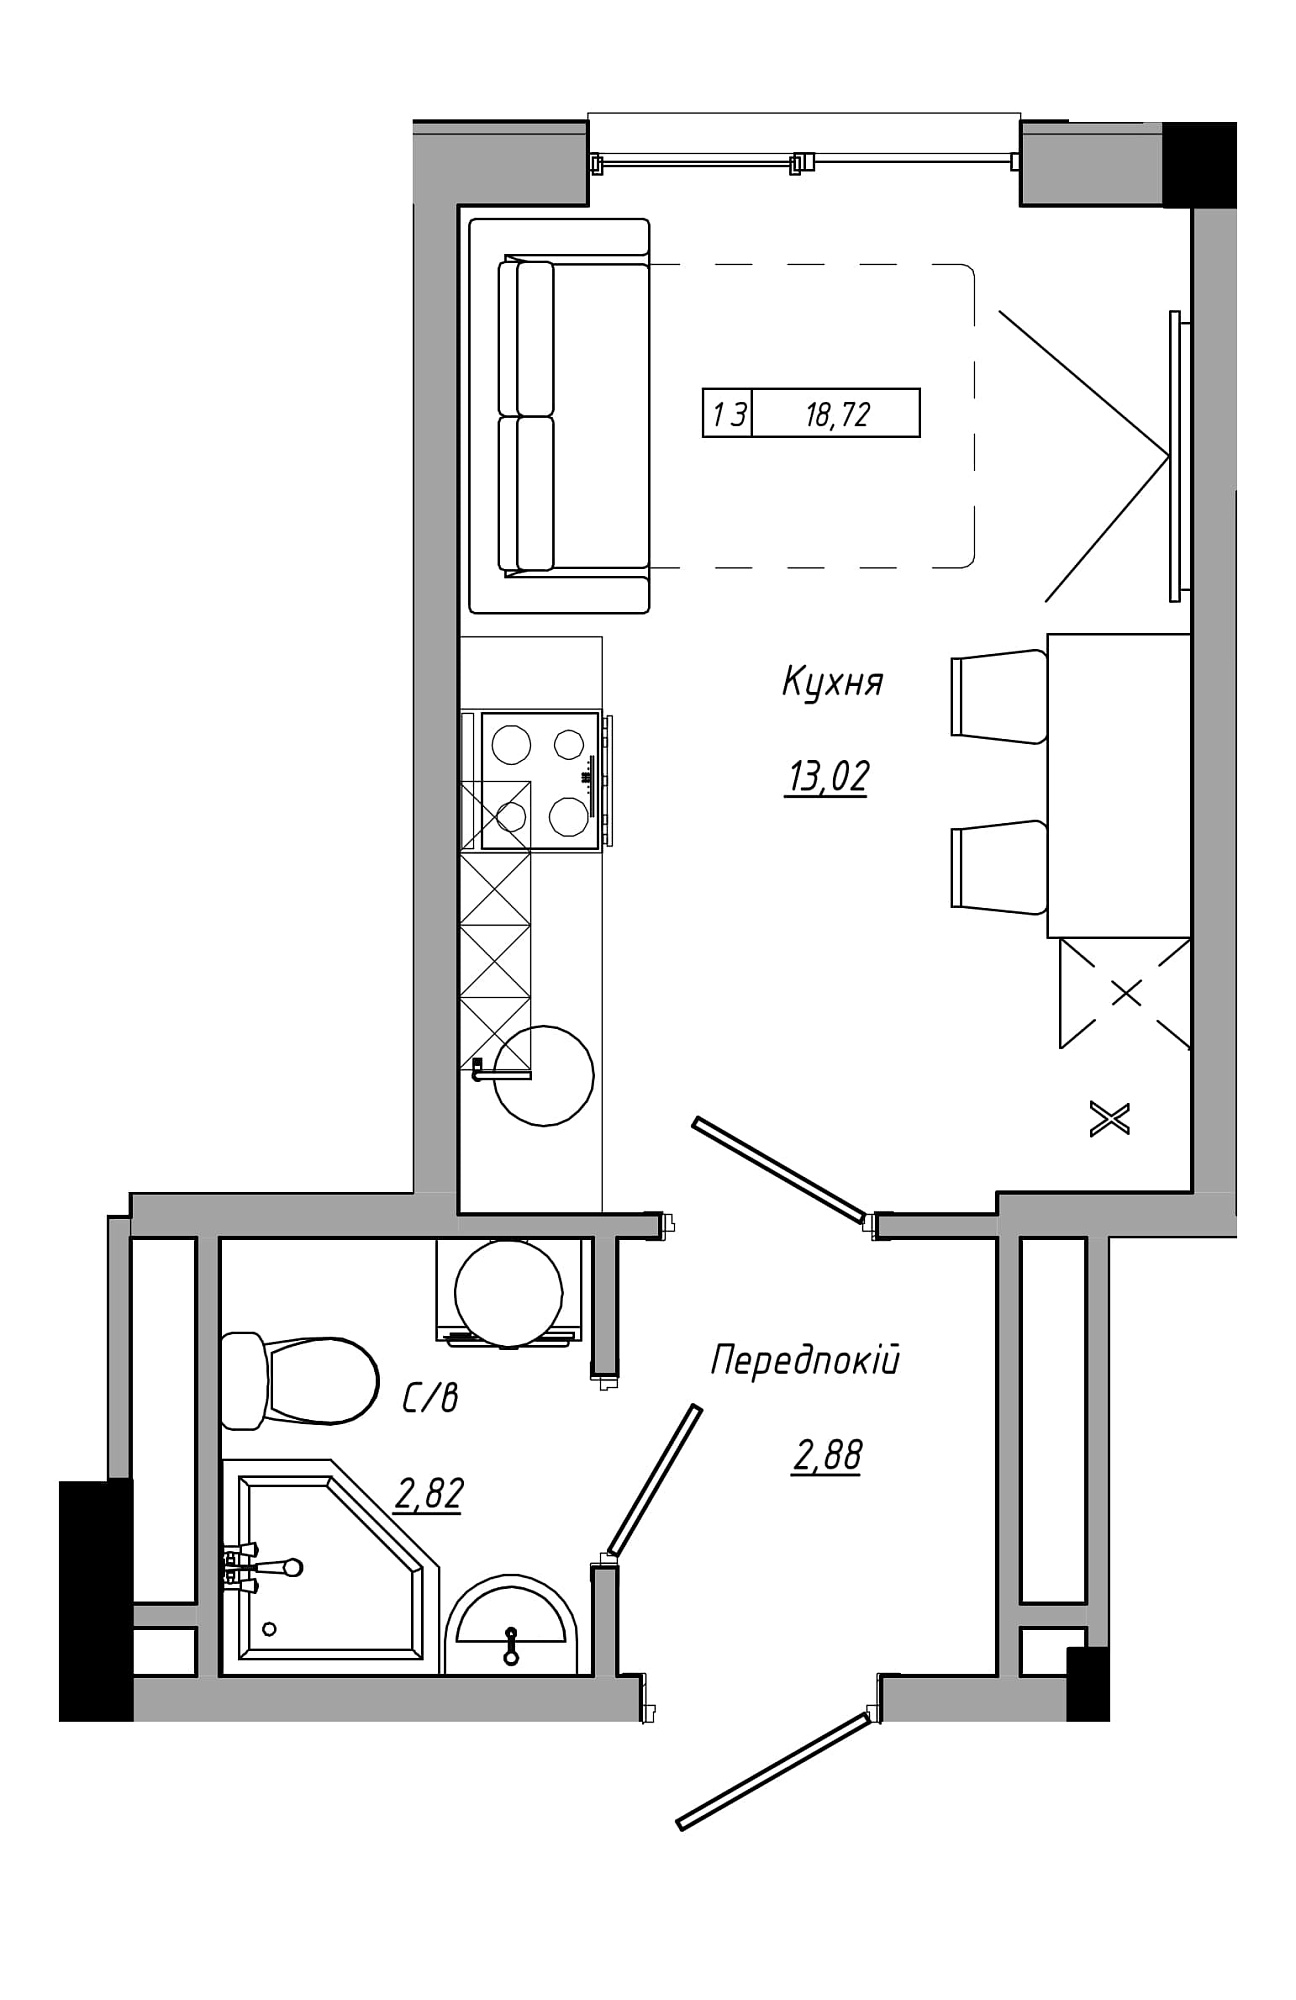 Планування Smart-квартира площею 18.72м2, AB-21-08/00011.